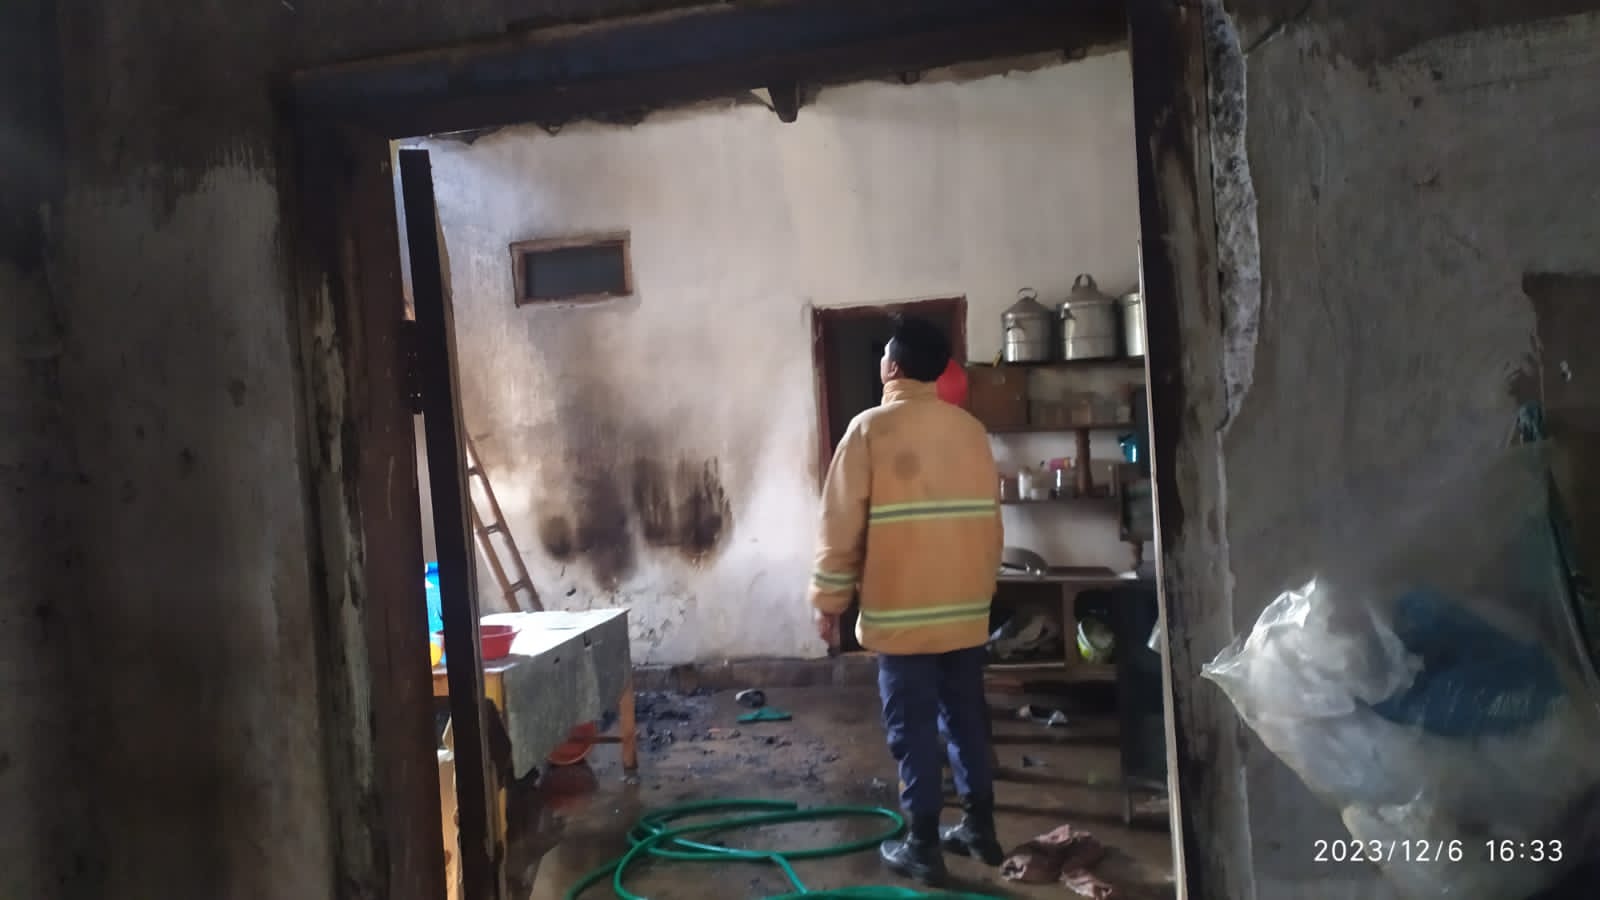 Penanganan Kebakaran Rumah Bagian Dapur di Dusun Besukrejo RT 01 RW 02 Desa Kabuaran Kec. Kunir